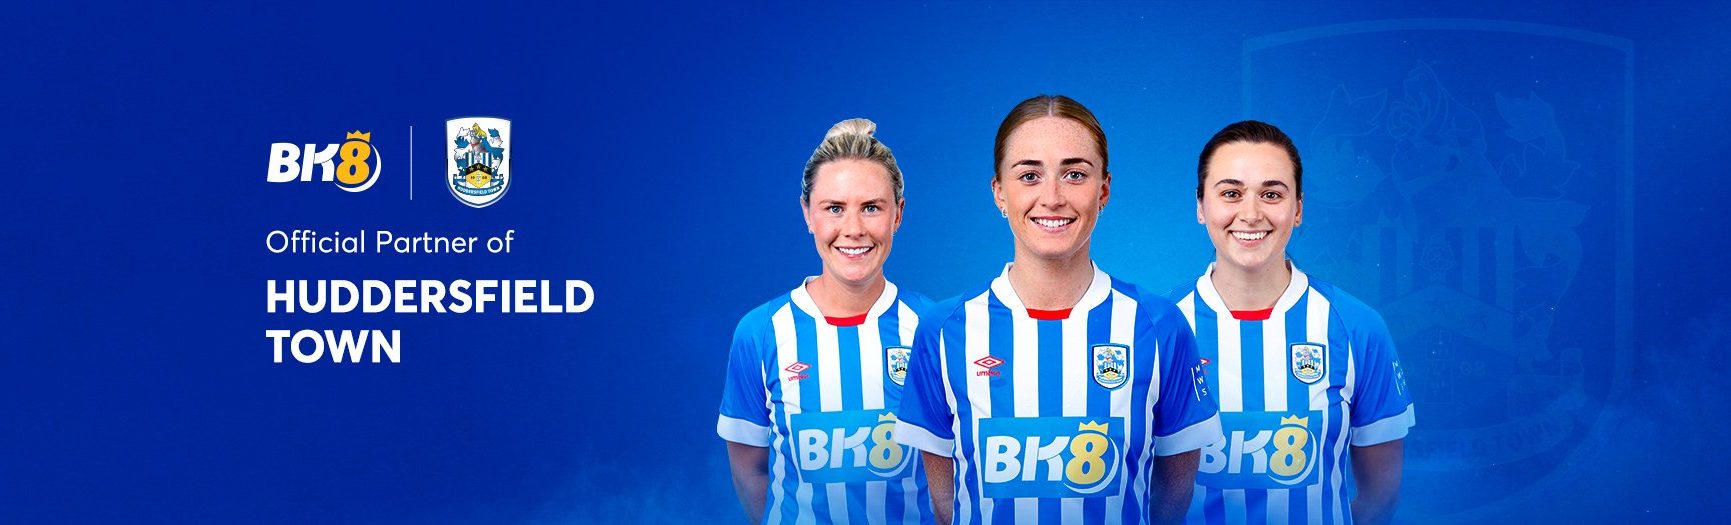 BK8-Official-Partner-of-Huddersfield-Town